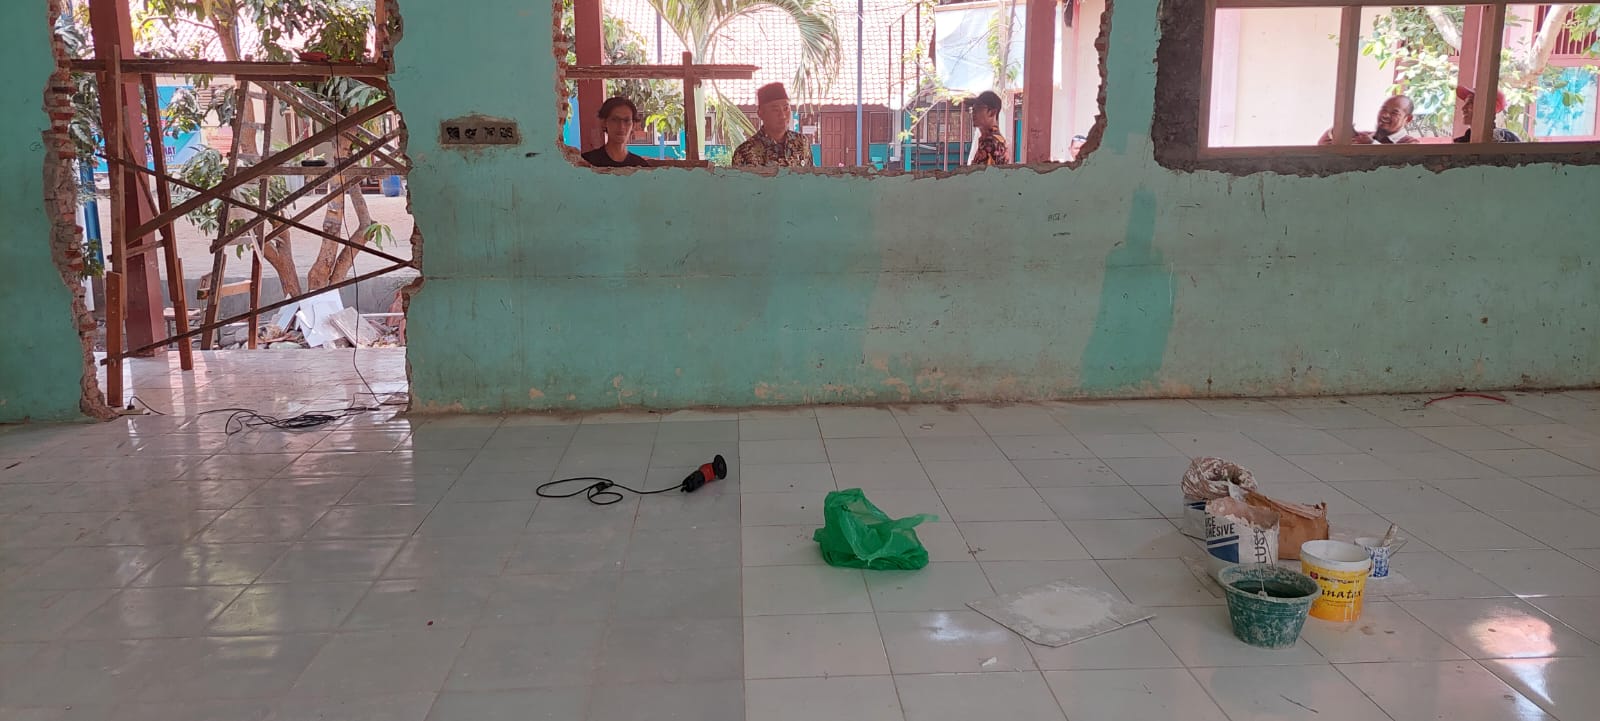 Proyek Rehab Ruang Kelas di SMPN 1 Kramat Disidak, Komisi IV DPRD Kabupaten Tegal Temukan Hal Janggal